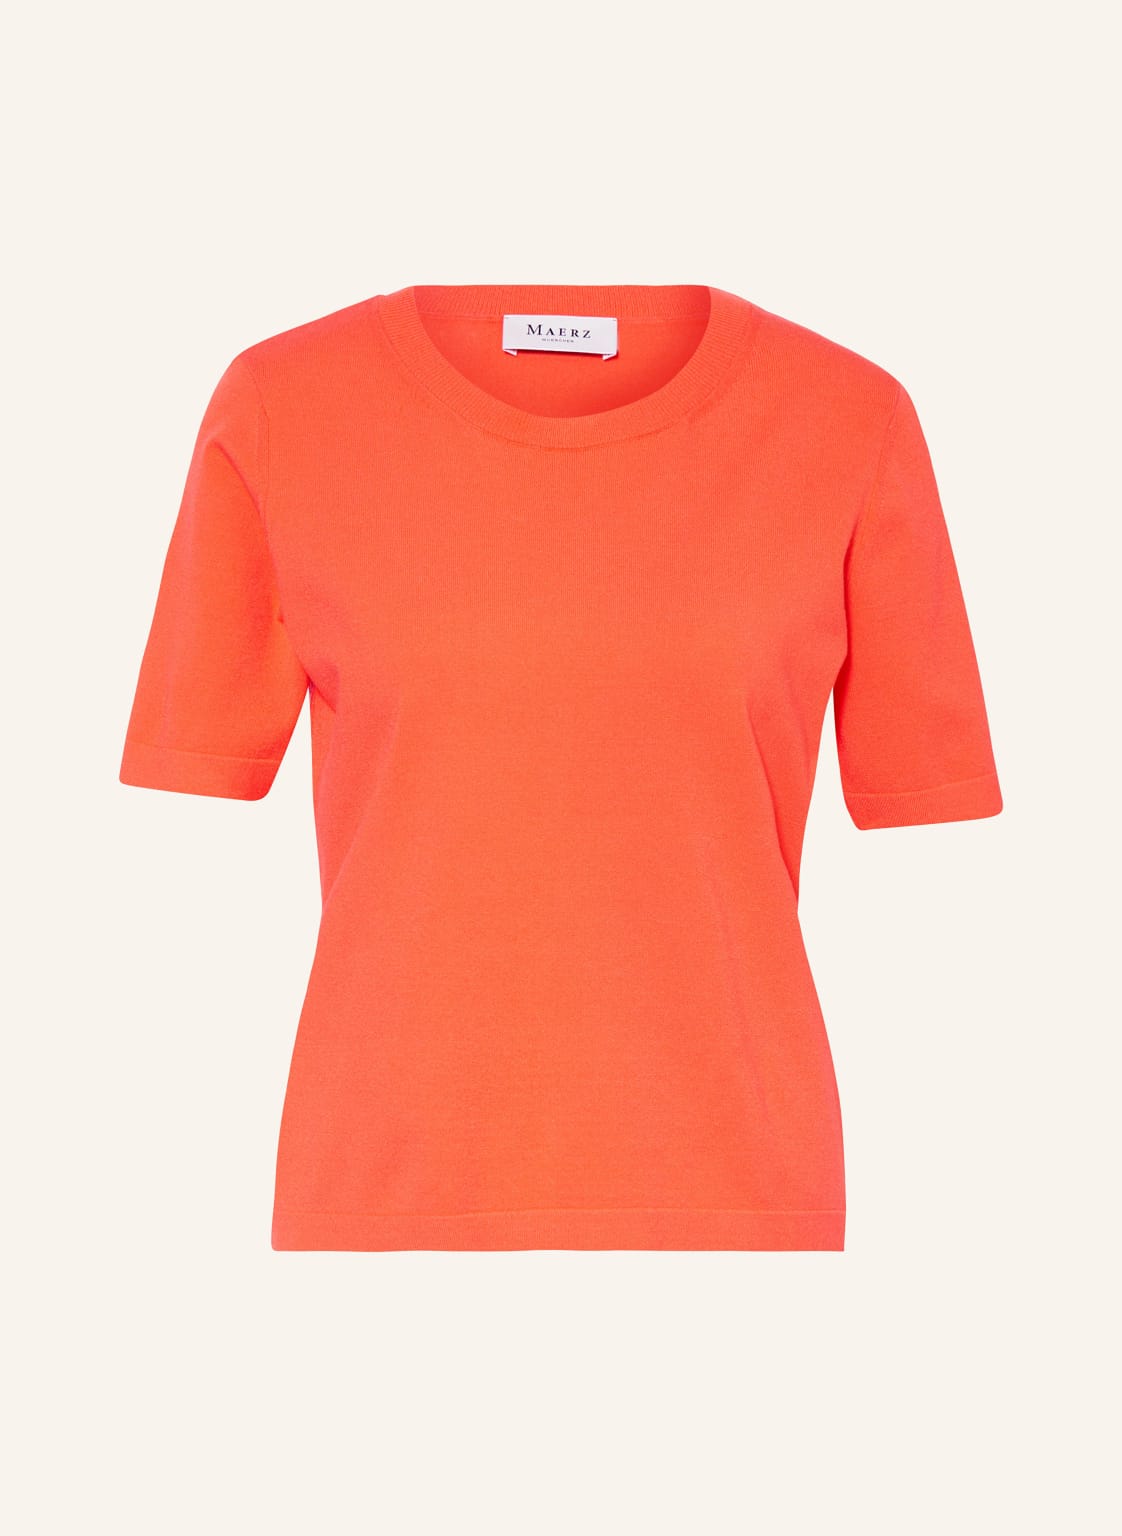 Maerz Muenchen T-Shirt orange von maerz muenchen